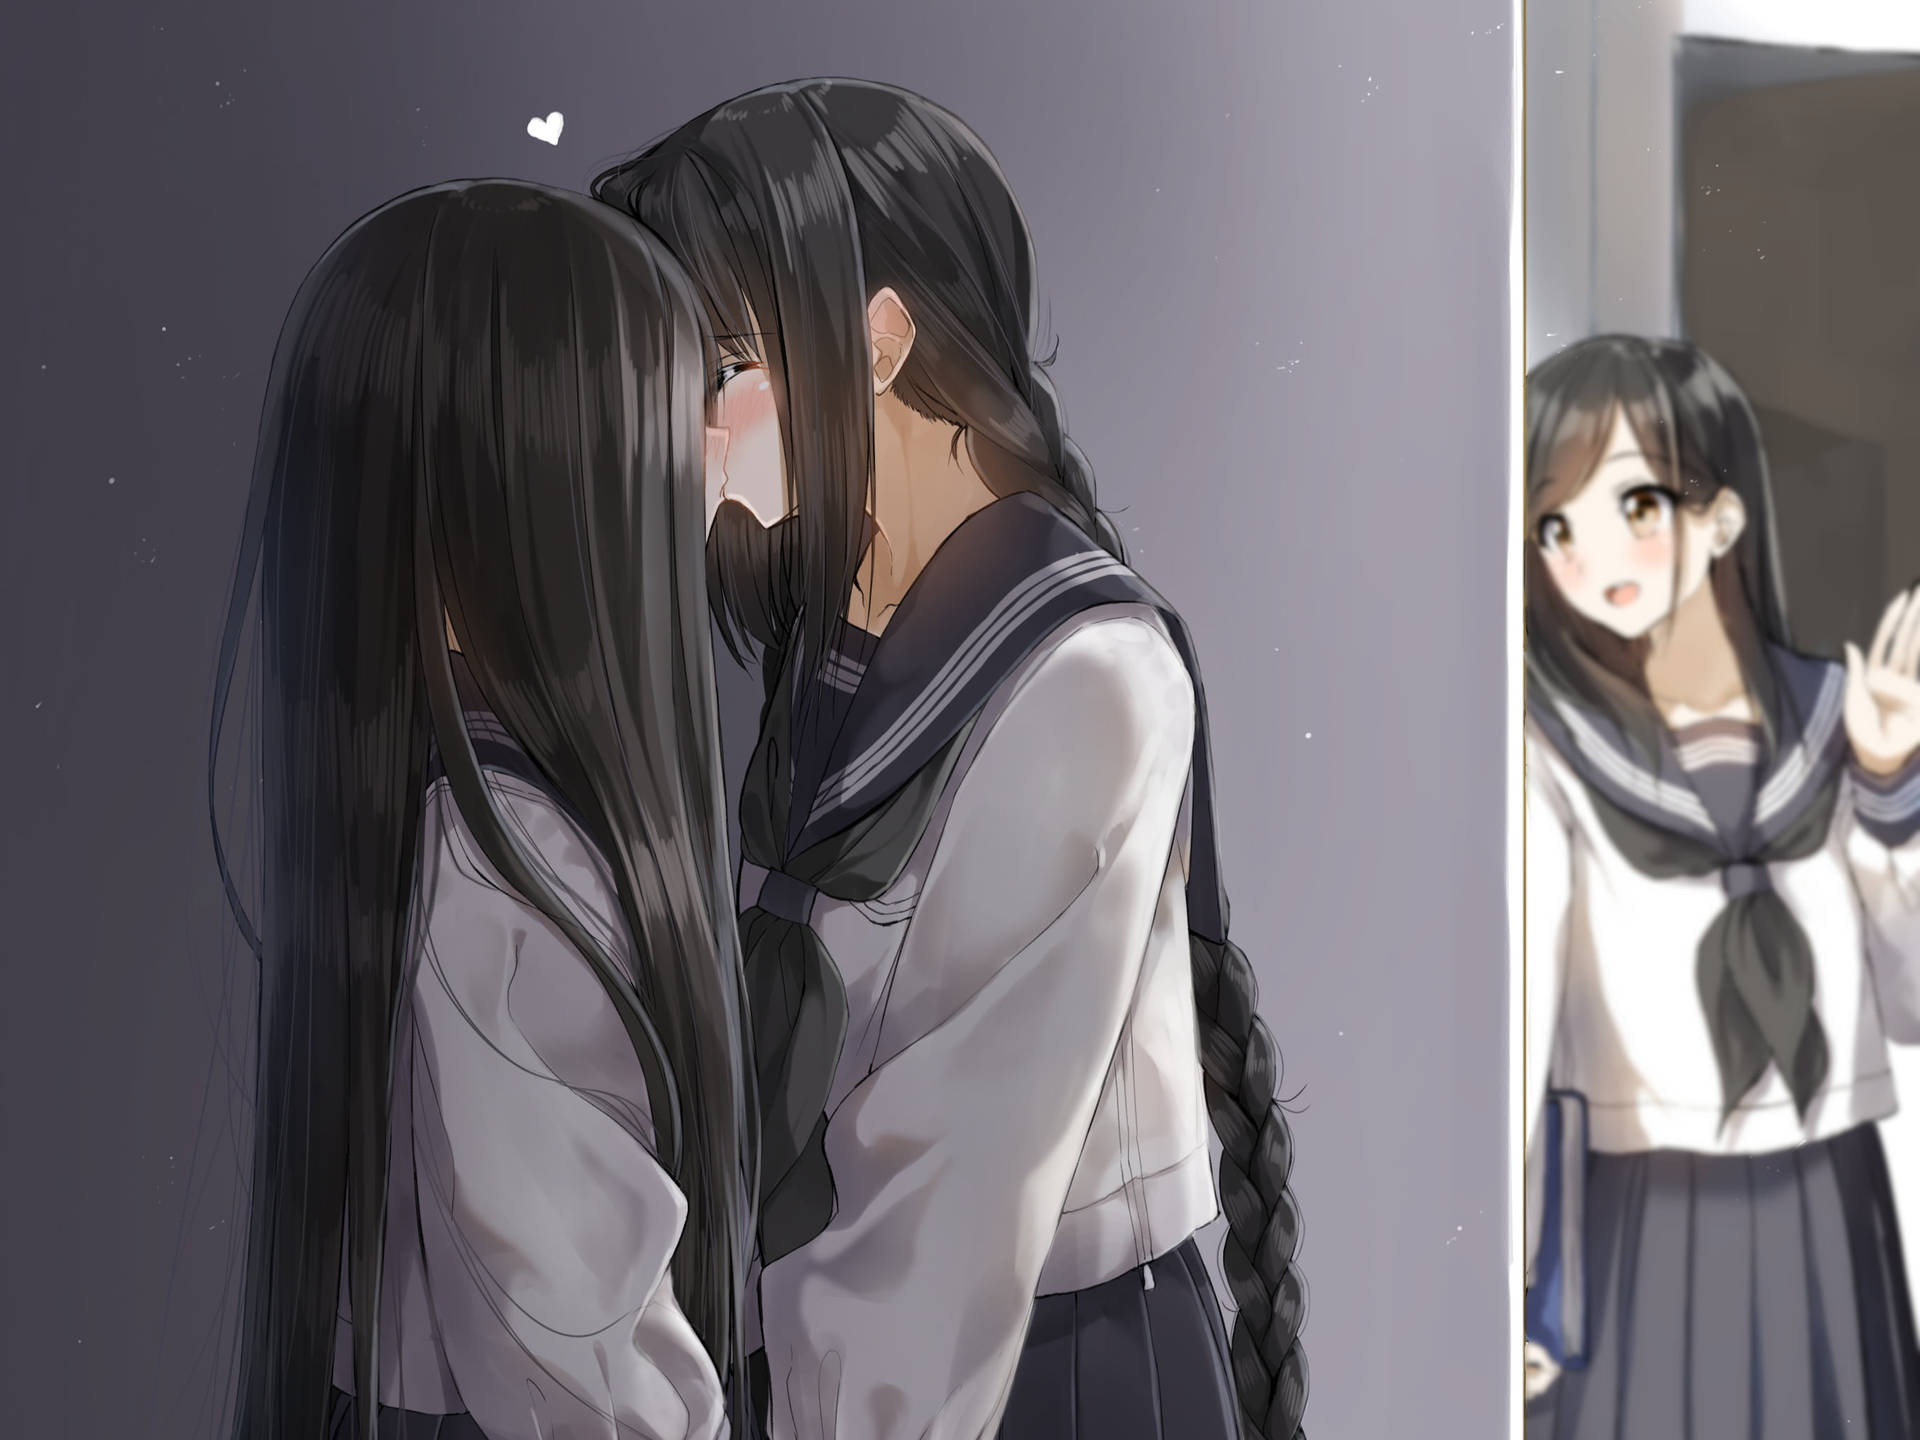 Anime Couple Kiss Drawing